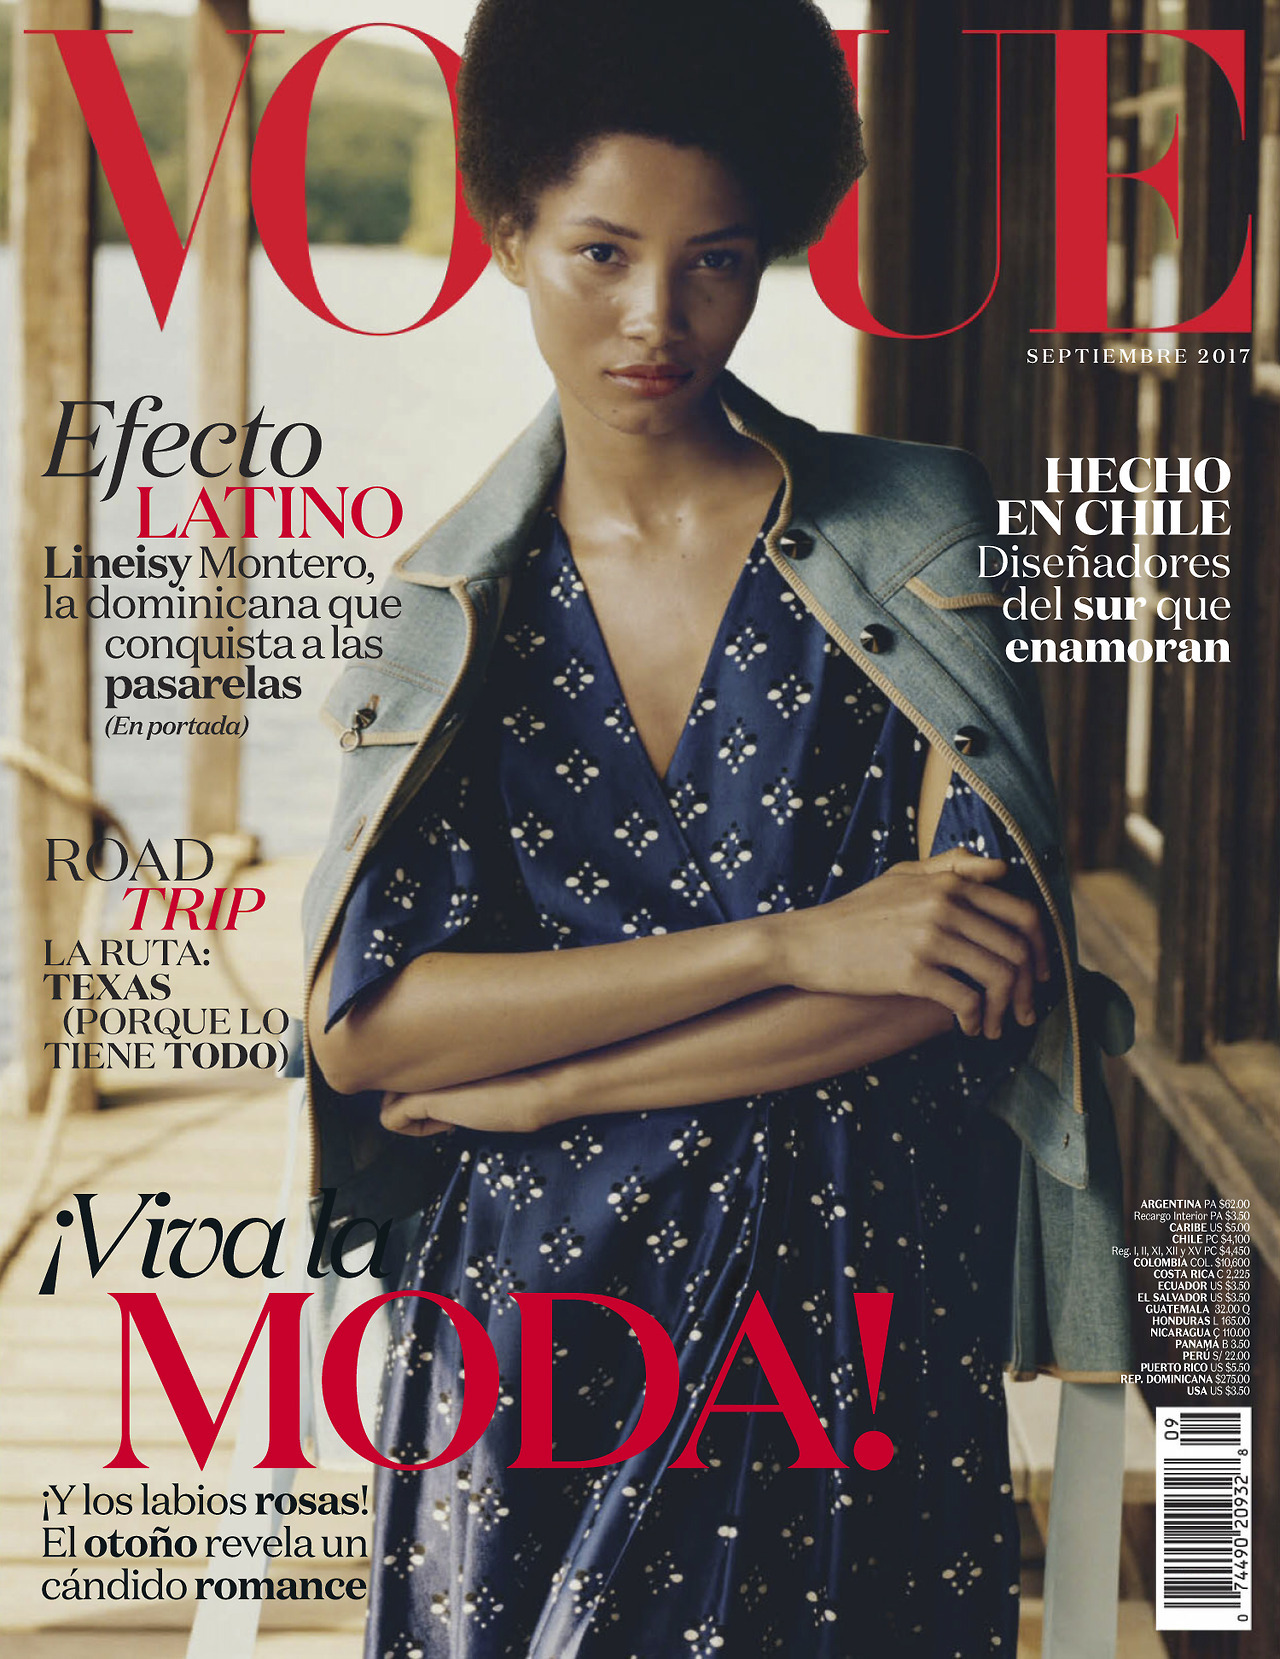 Vogue Mexico September 2017 Cover Story Editorial